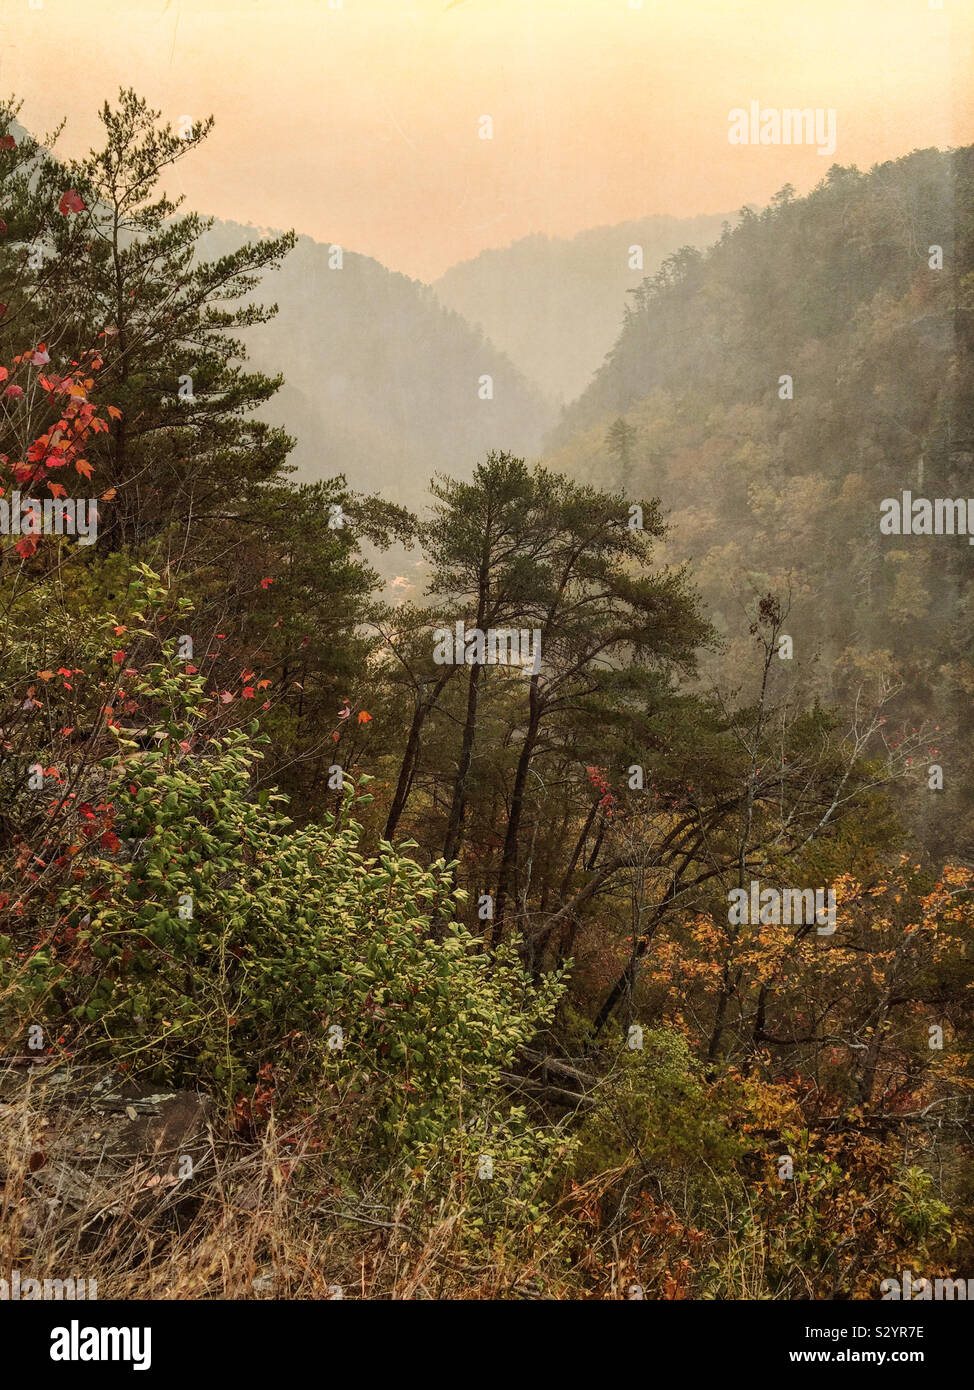 Une fumée feux à proximité mélangée avec un matin brumeux au parc national des Gorges de Tallulah en Géorgie AUX ETATS UNIS a créé une étrange couleur dominante de la région. Les feuilles d'automne sont colorés. Banque D'Images